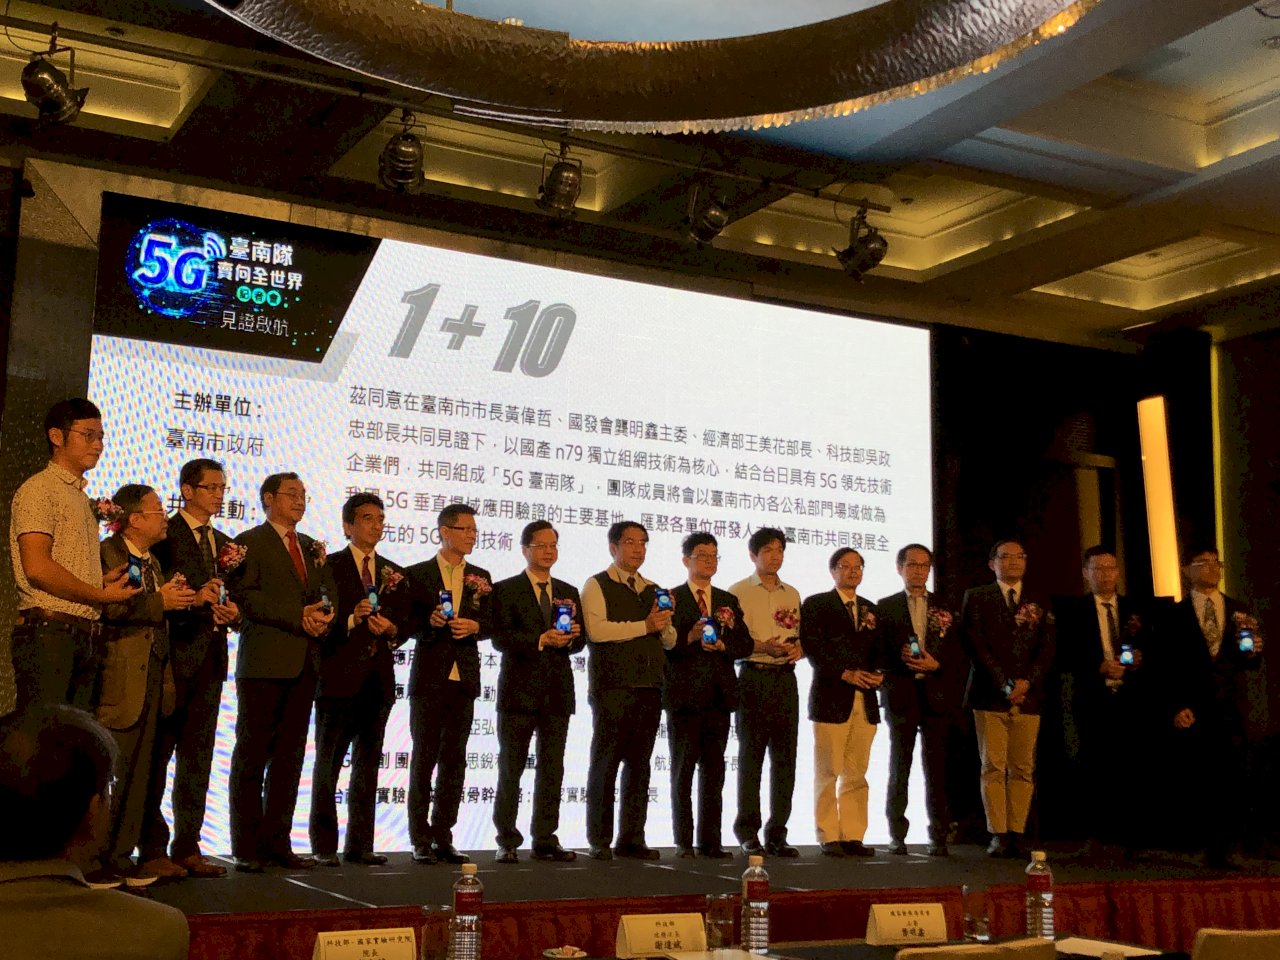 5G台南隊成軍 打造台灣首個5G城市